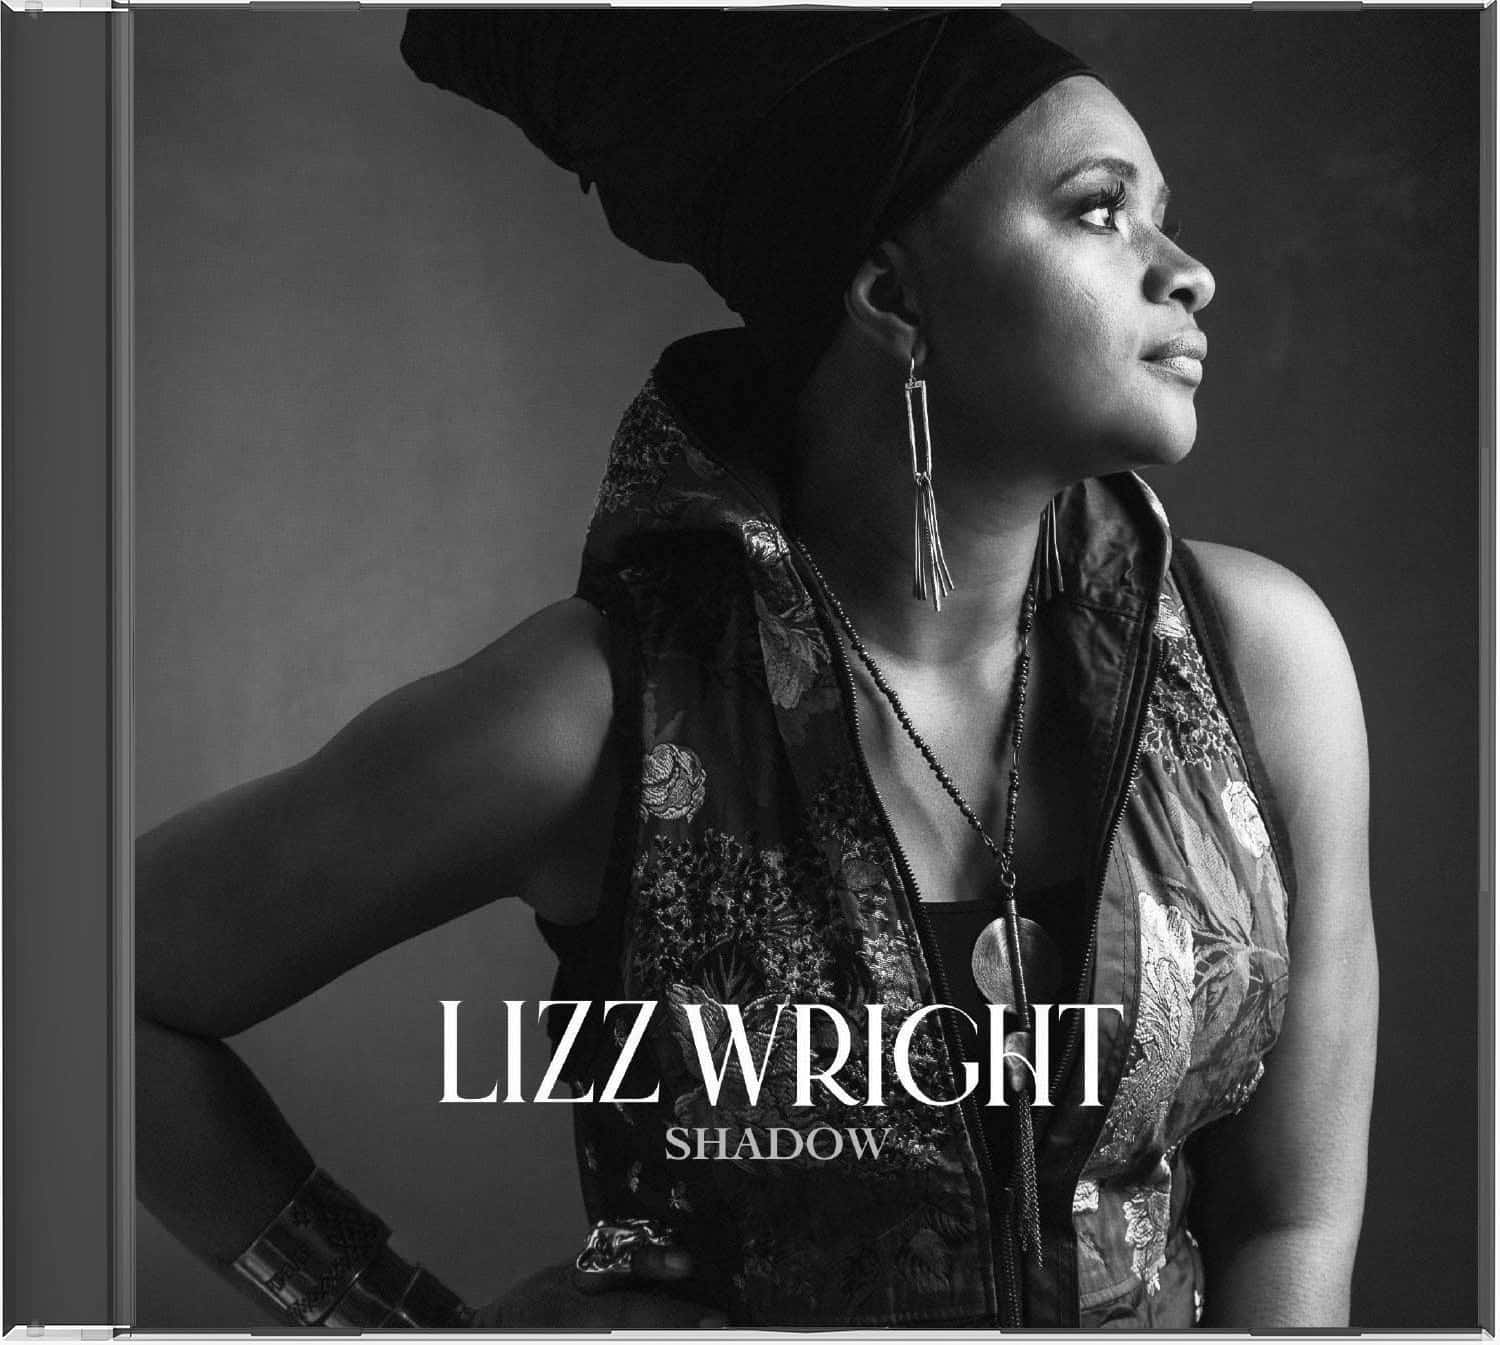 Lizz Wright - Shadows